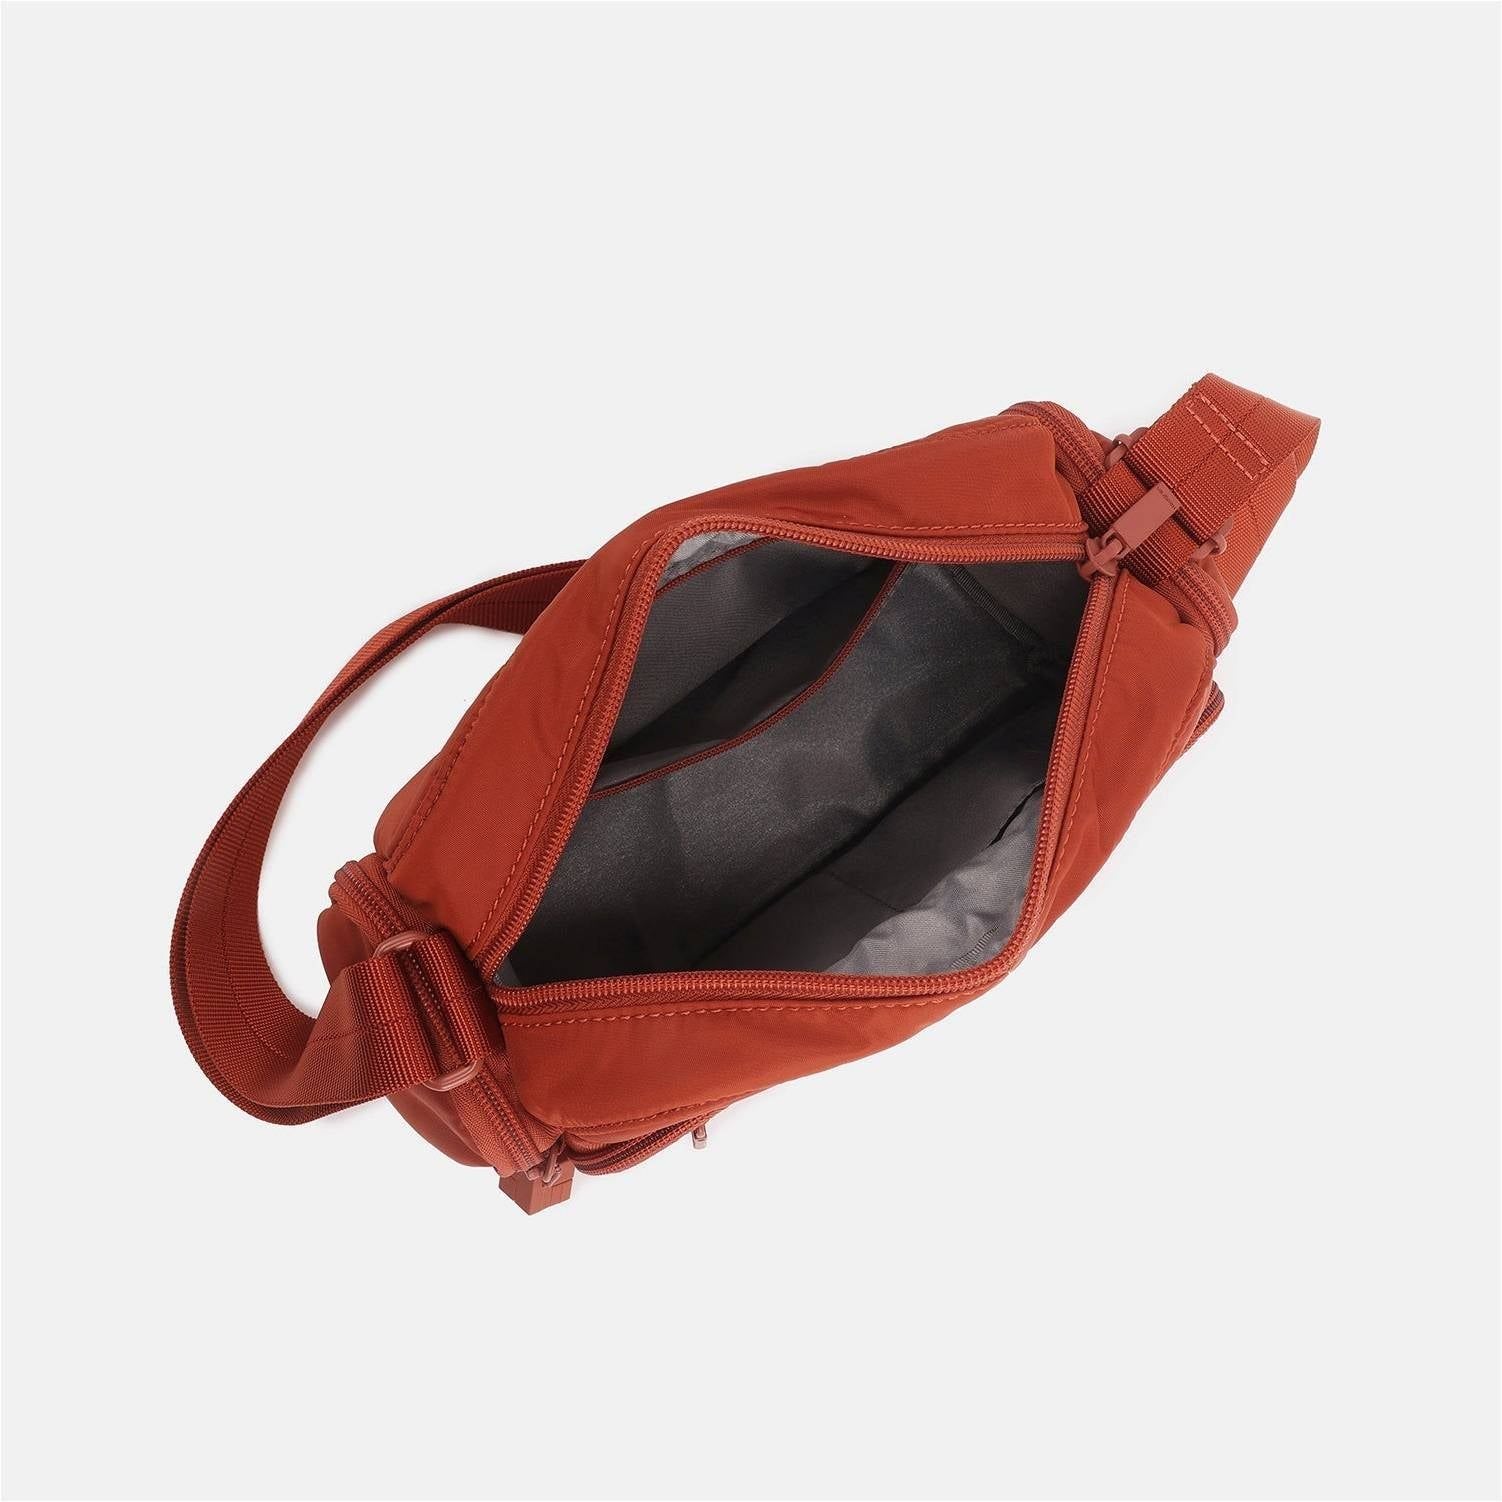 Hedgren-EMILY shoulder bag - rainbowbags